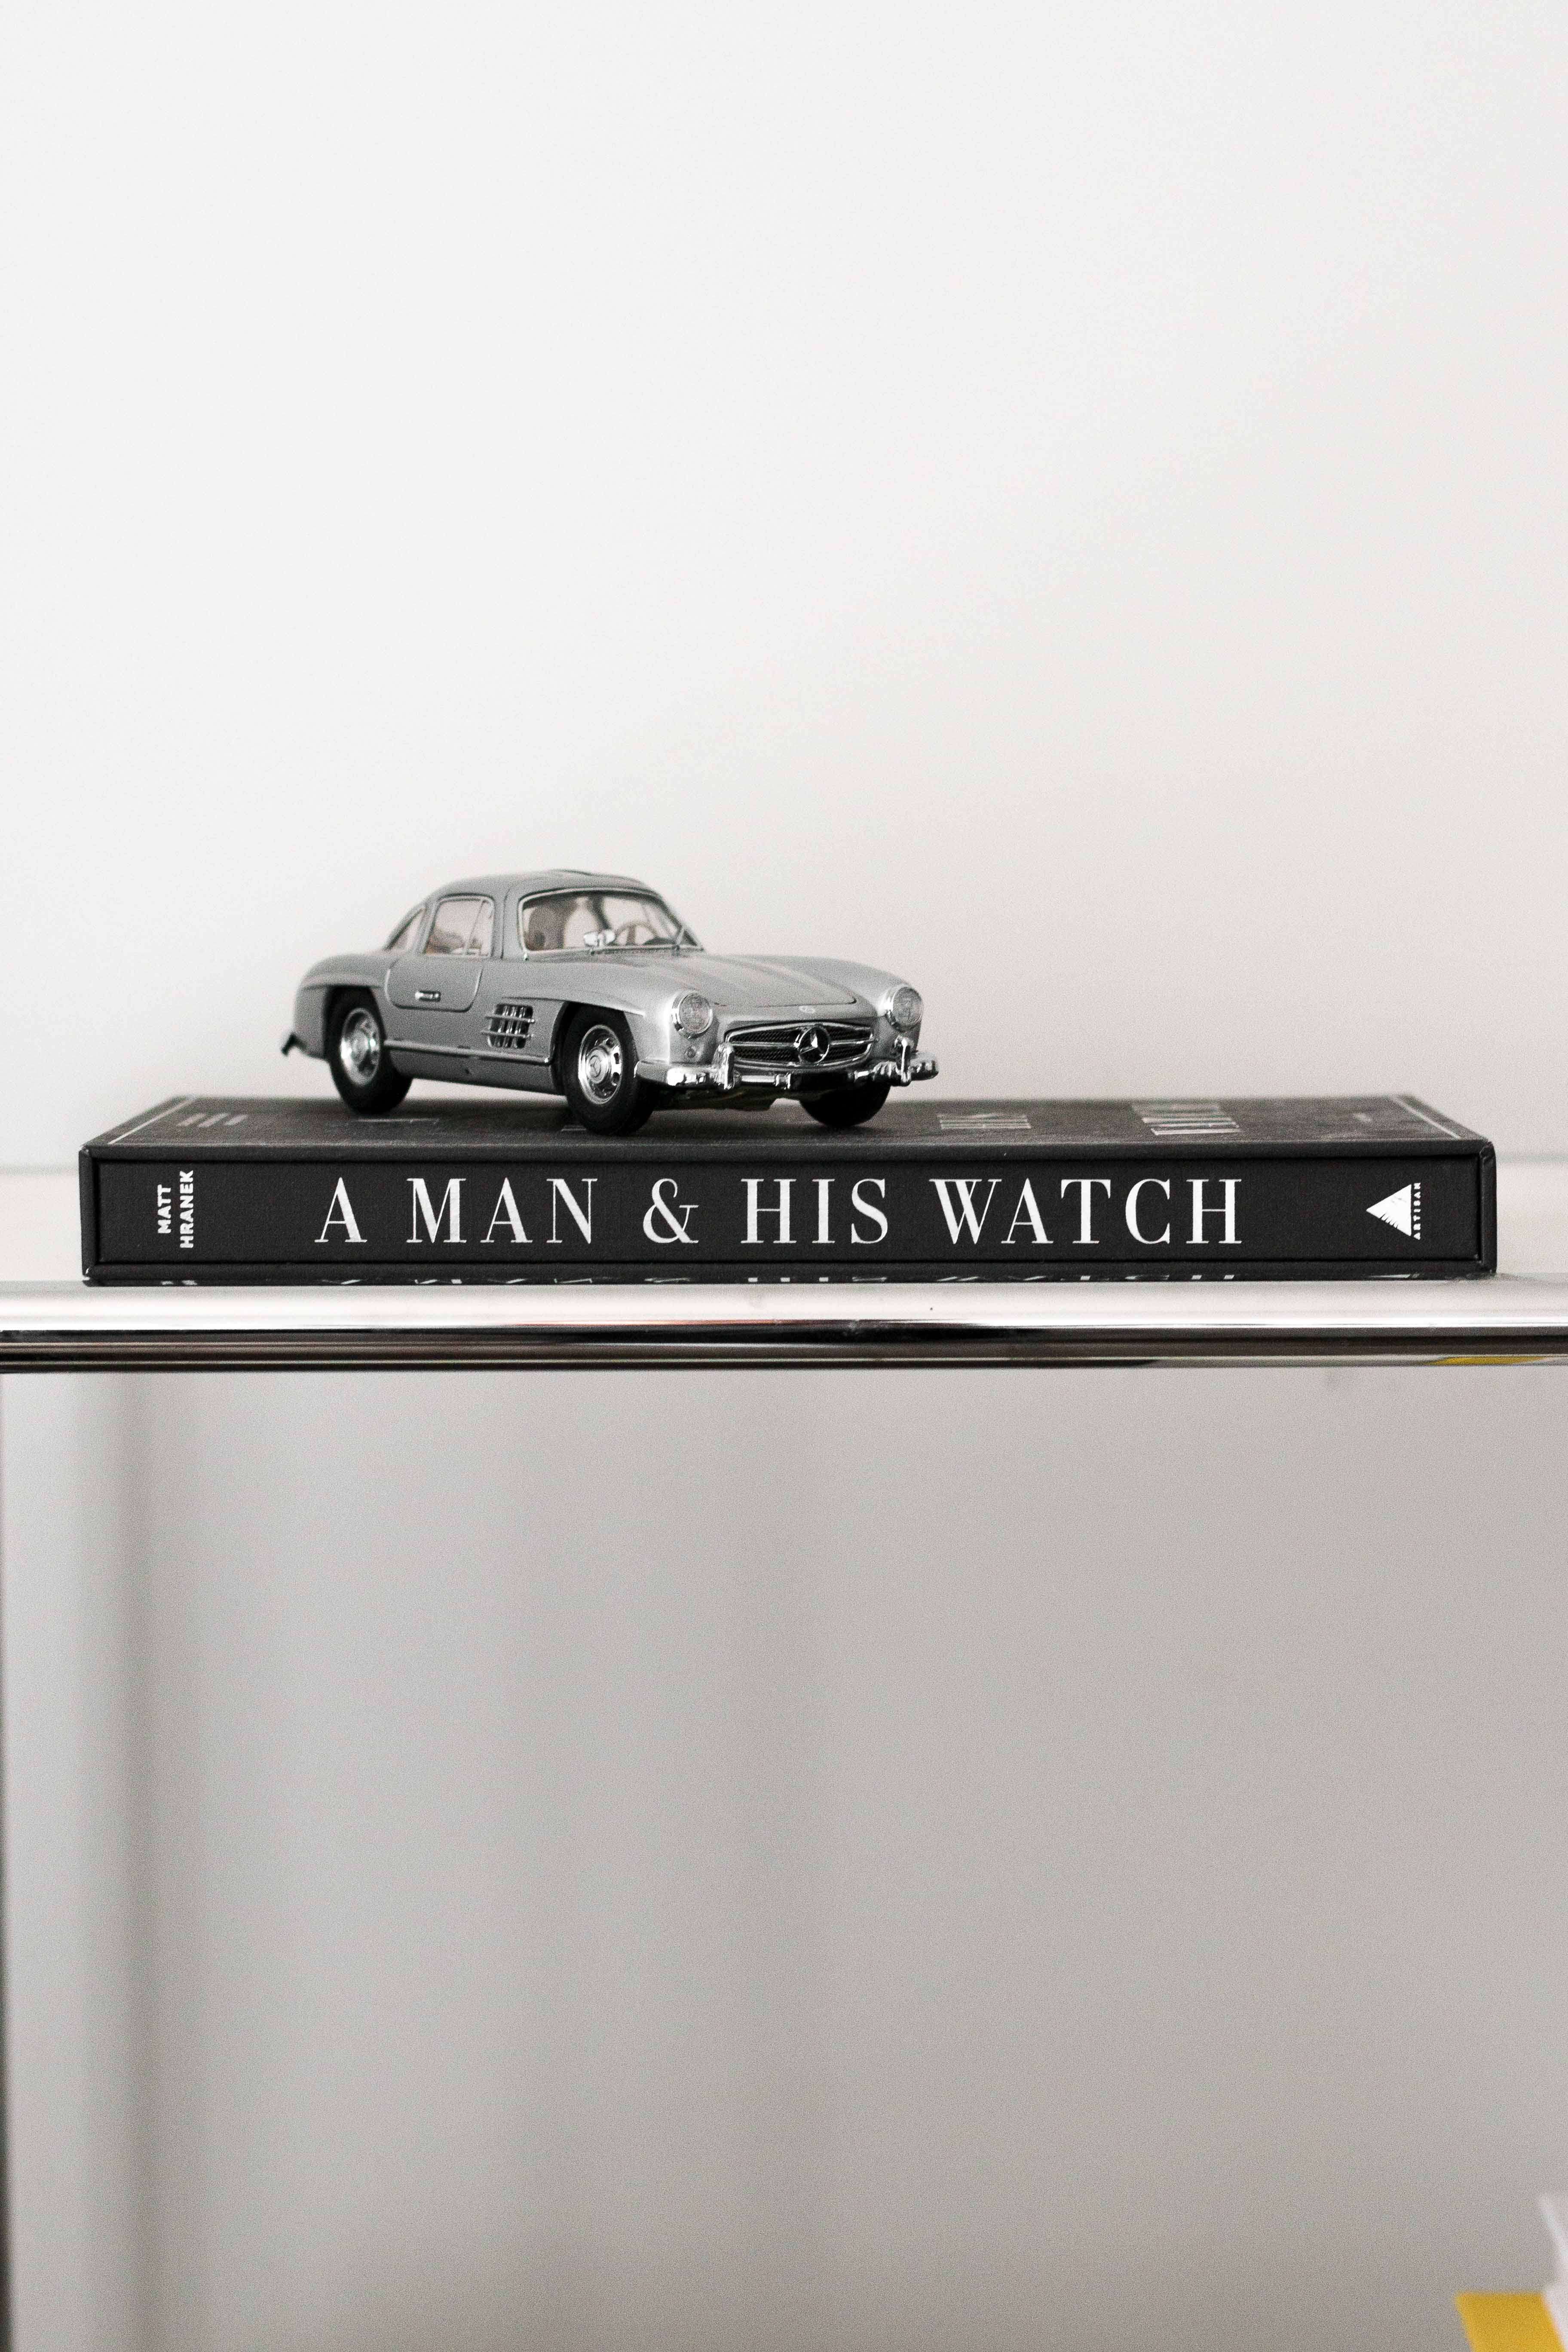 A Man & His Watch by Matt Hranek